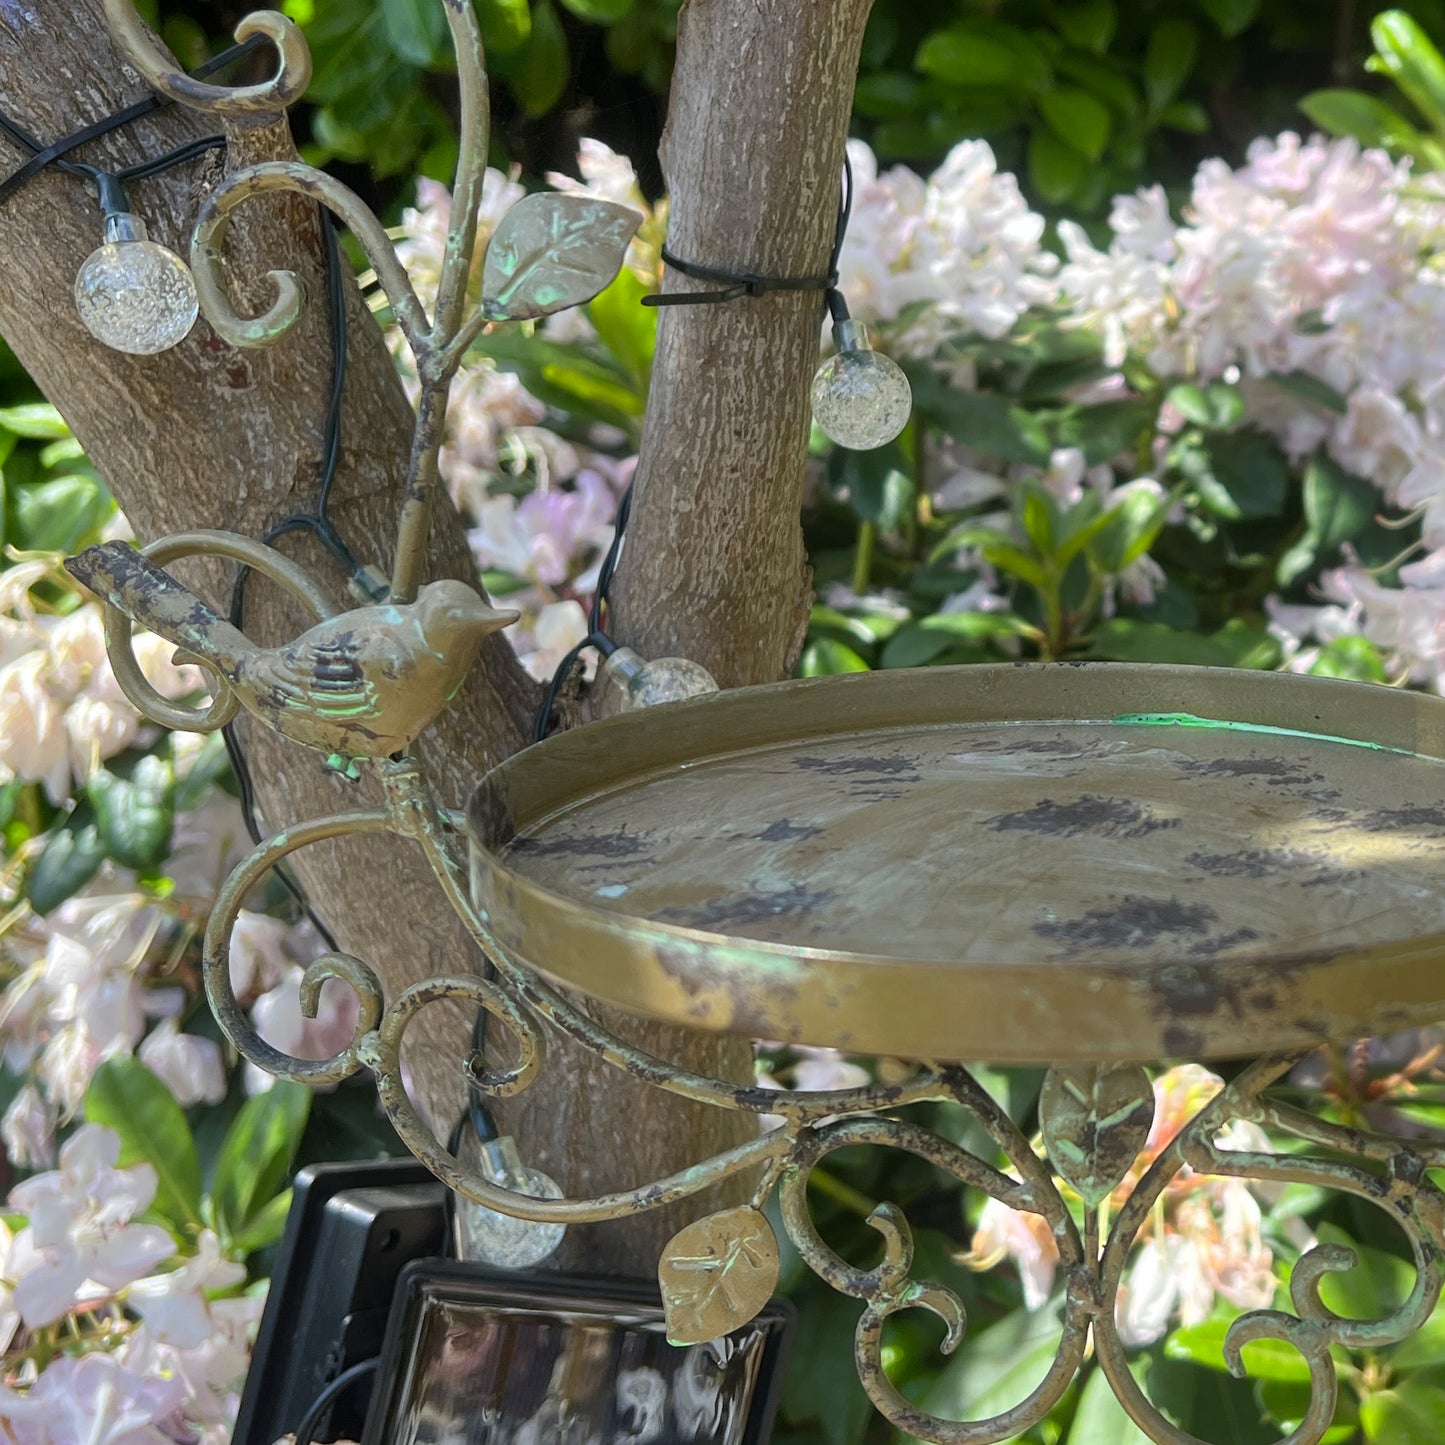 Vintage Hanging Bird Feeder Dish - Birds